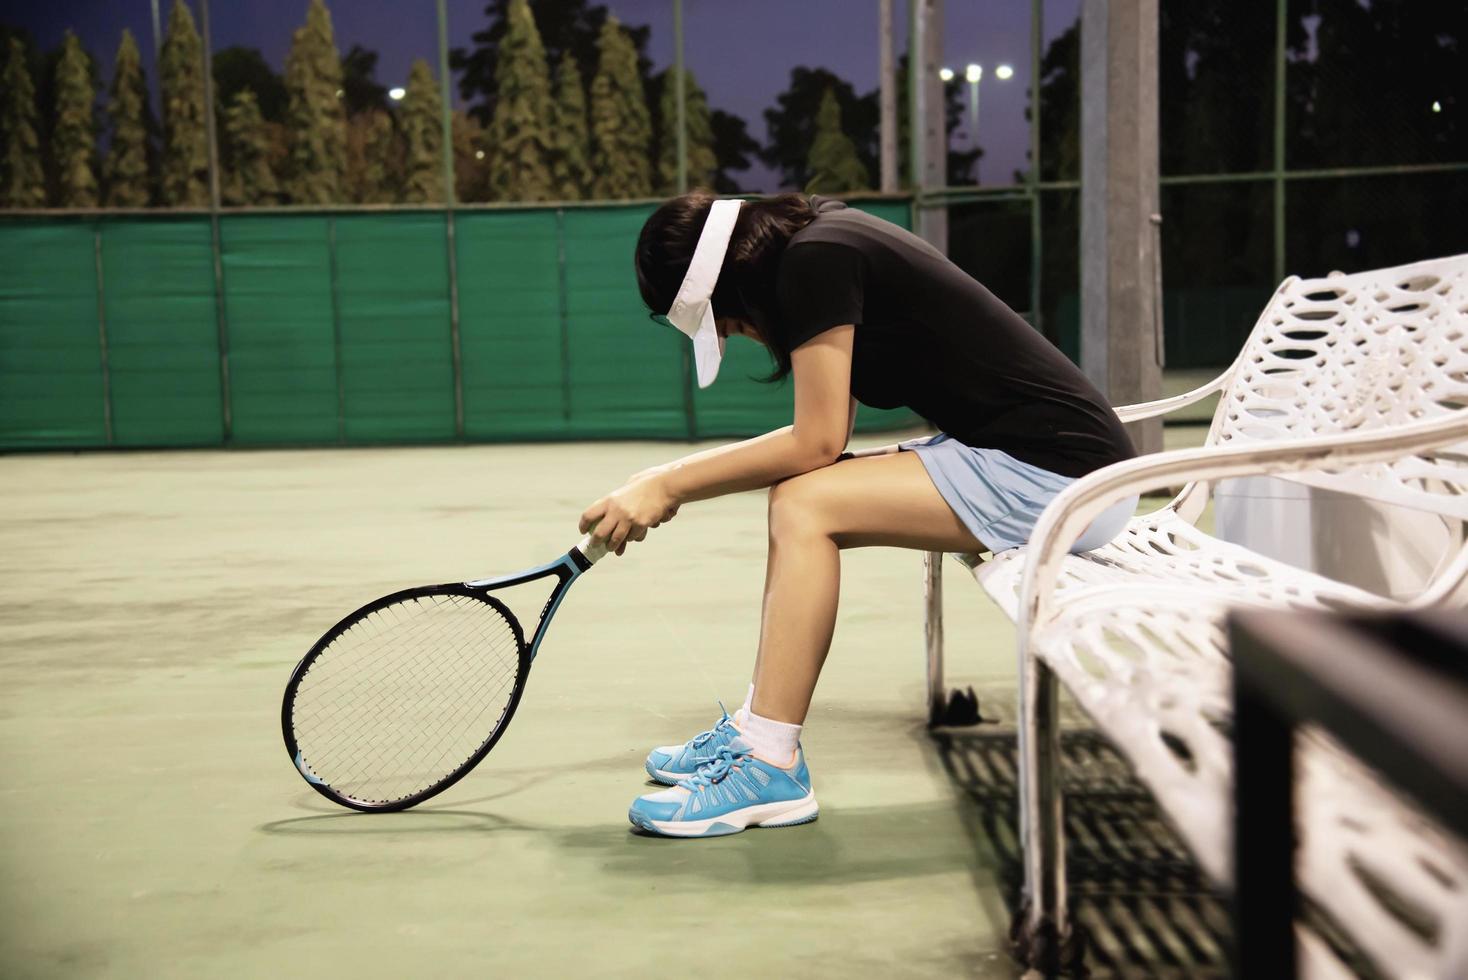 tenista triste sentada en la cancha después de perder un partido - gente en el concepto de juego de tenis deportivo foto